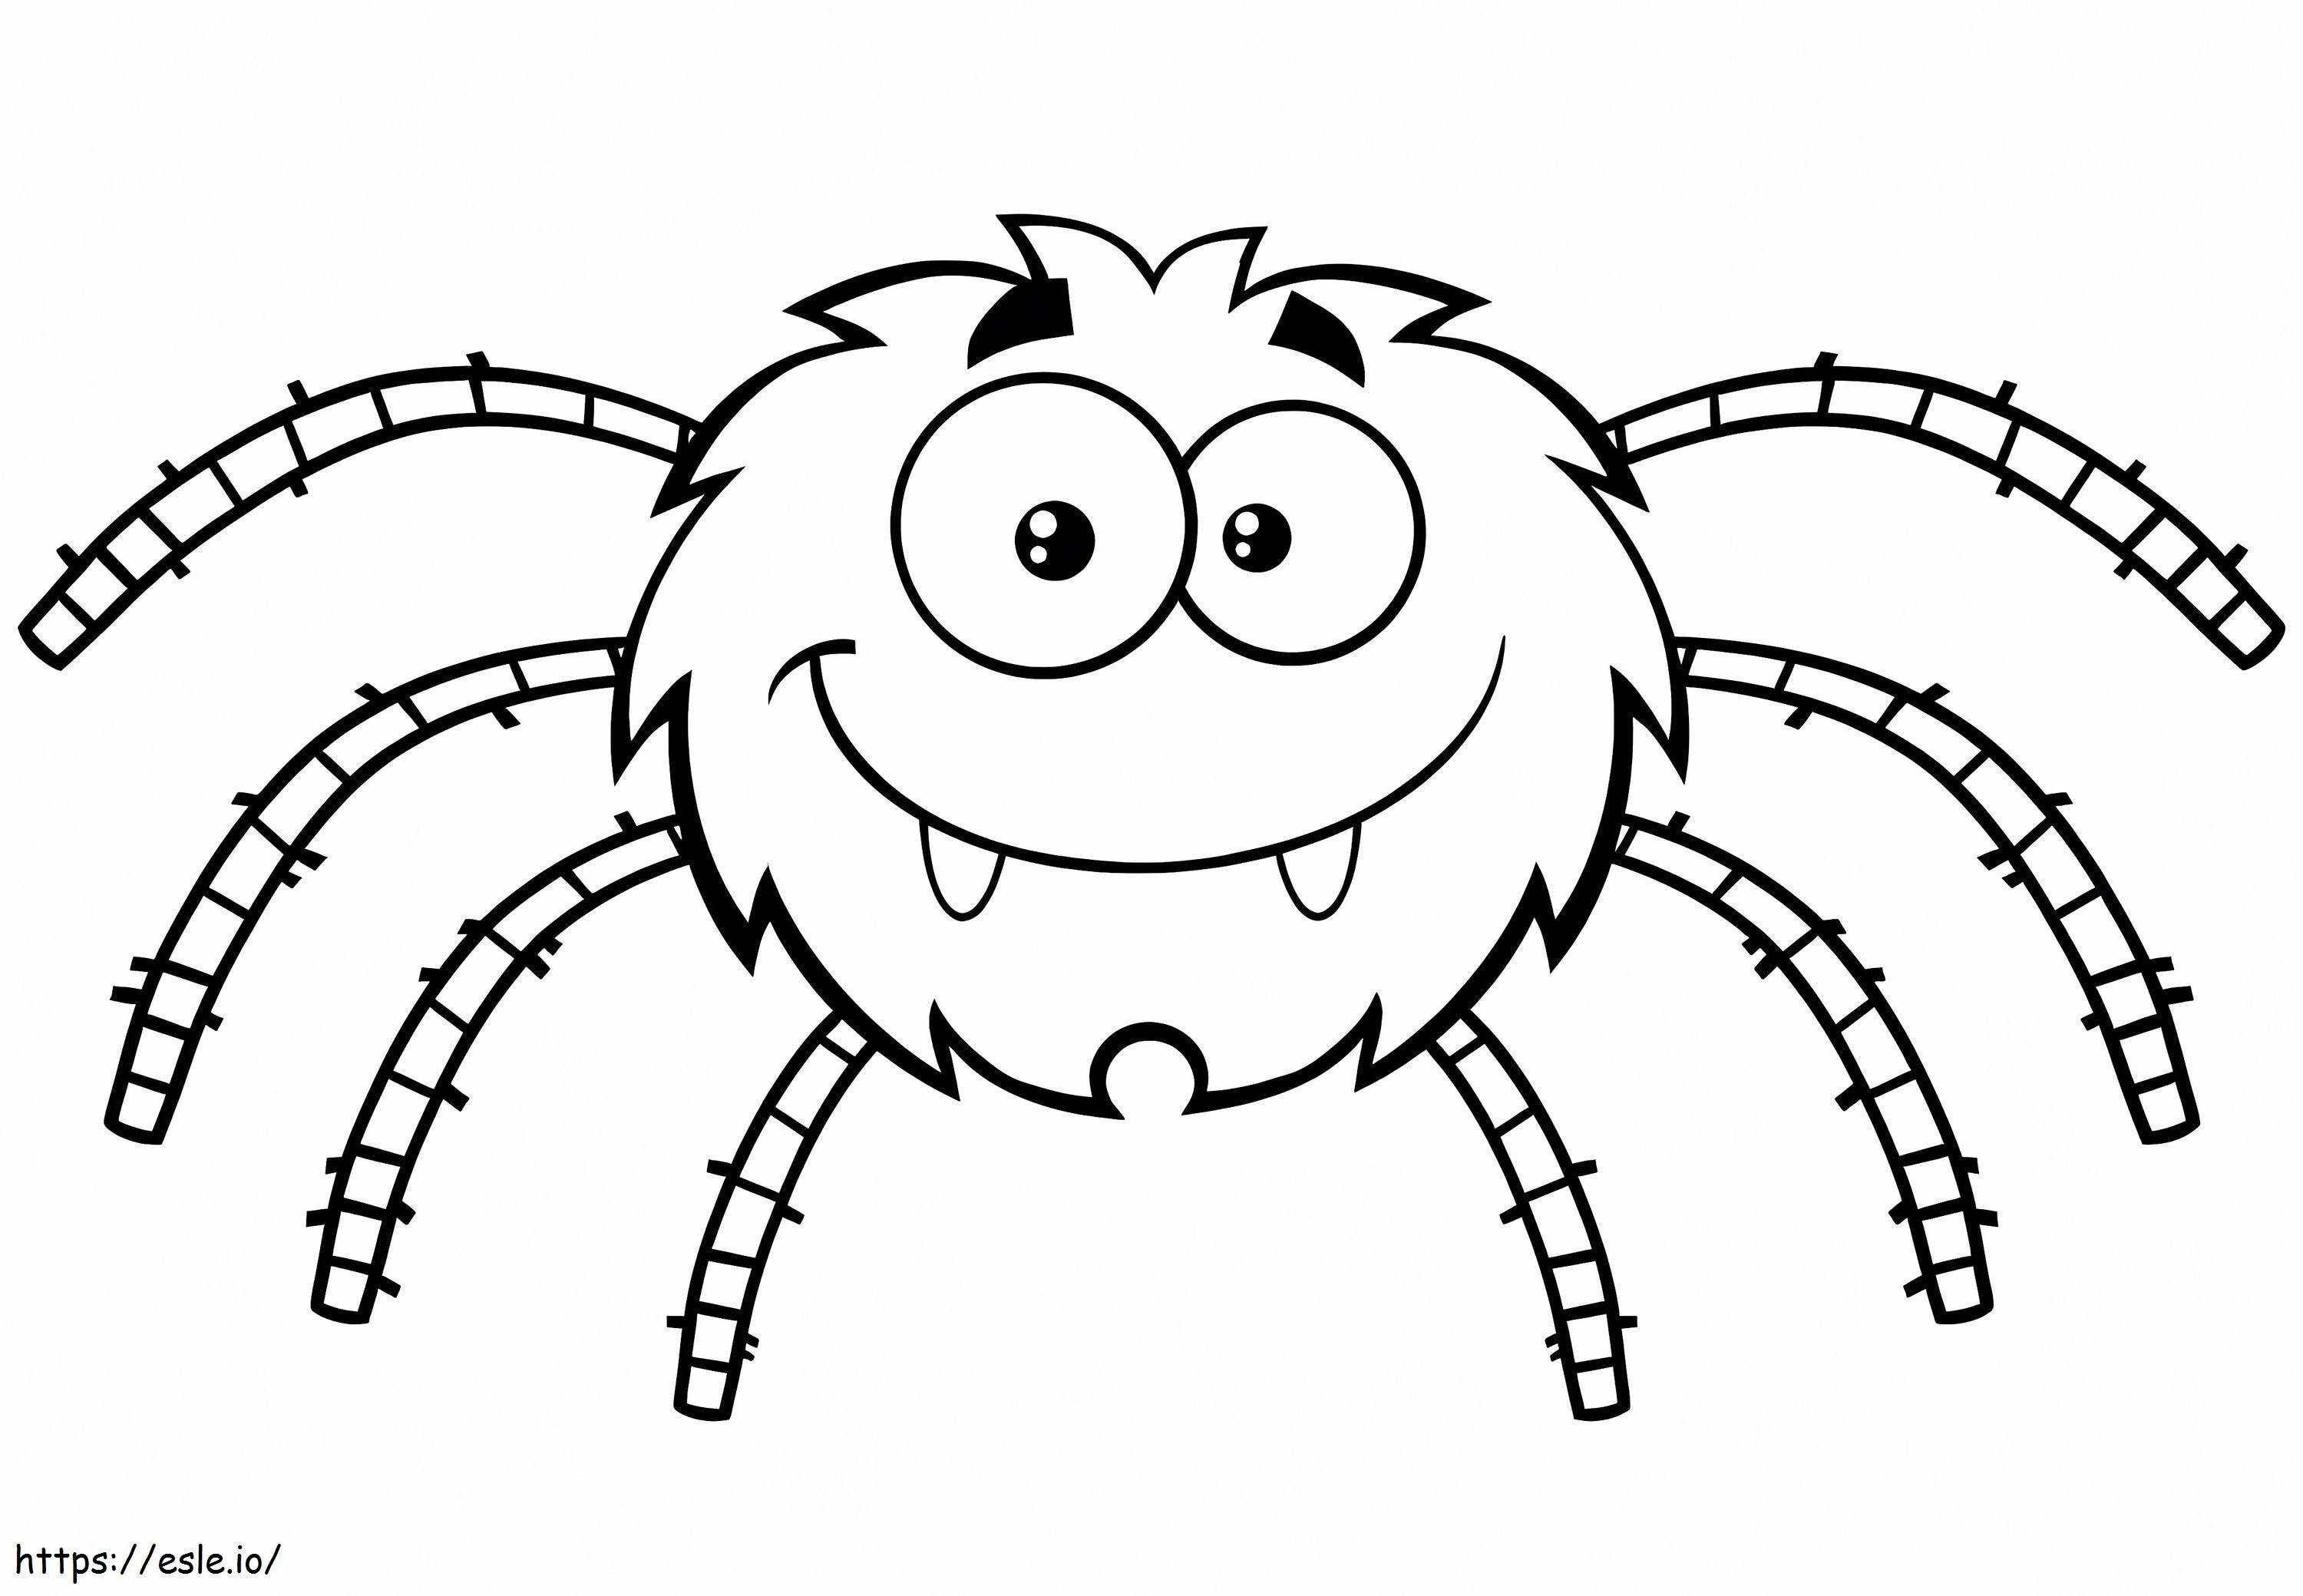 Aranha dos desenhos animados para colorir